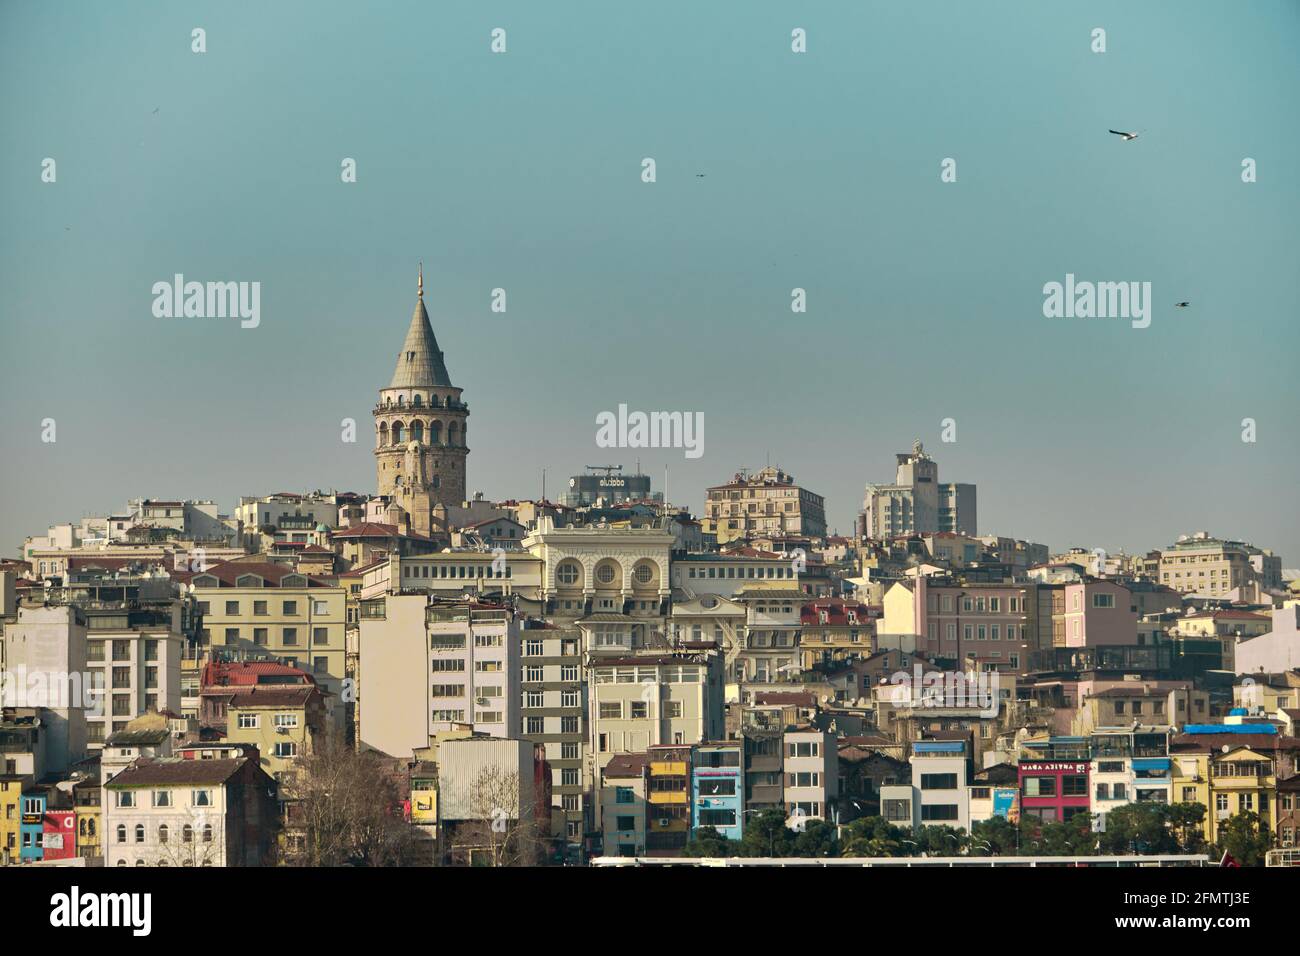 Der berühmte galata-Turm von istanbul wurde von istanbul bosporus fotografiert. Er wurde von genuesischen Matrosen für die Beobachtung des bosporus von konstantinopel errichtet. Stockfoto